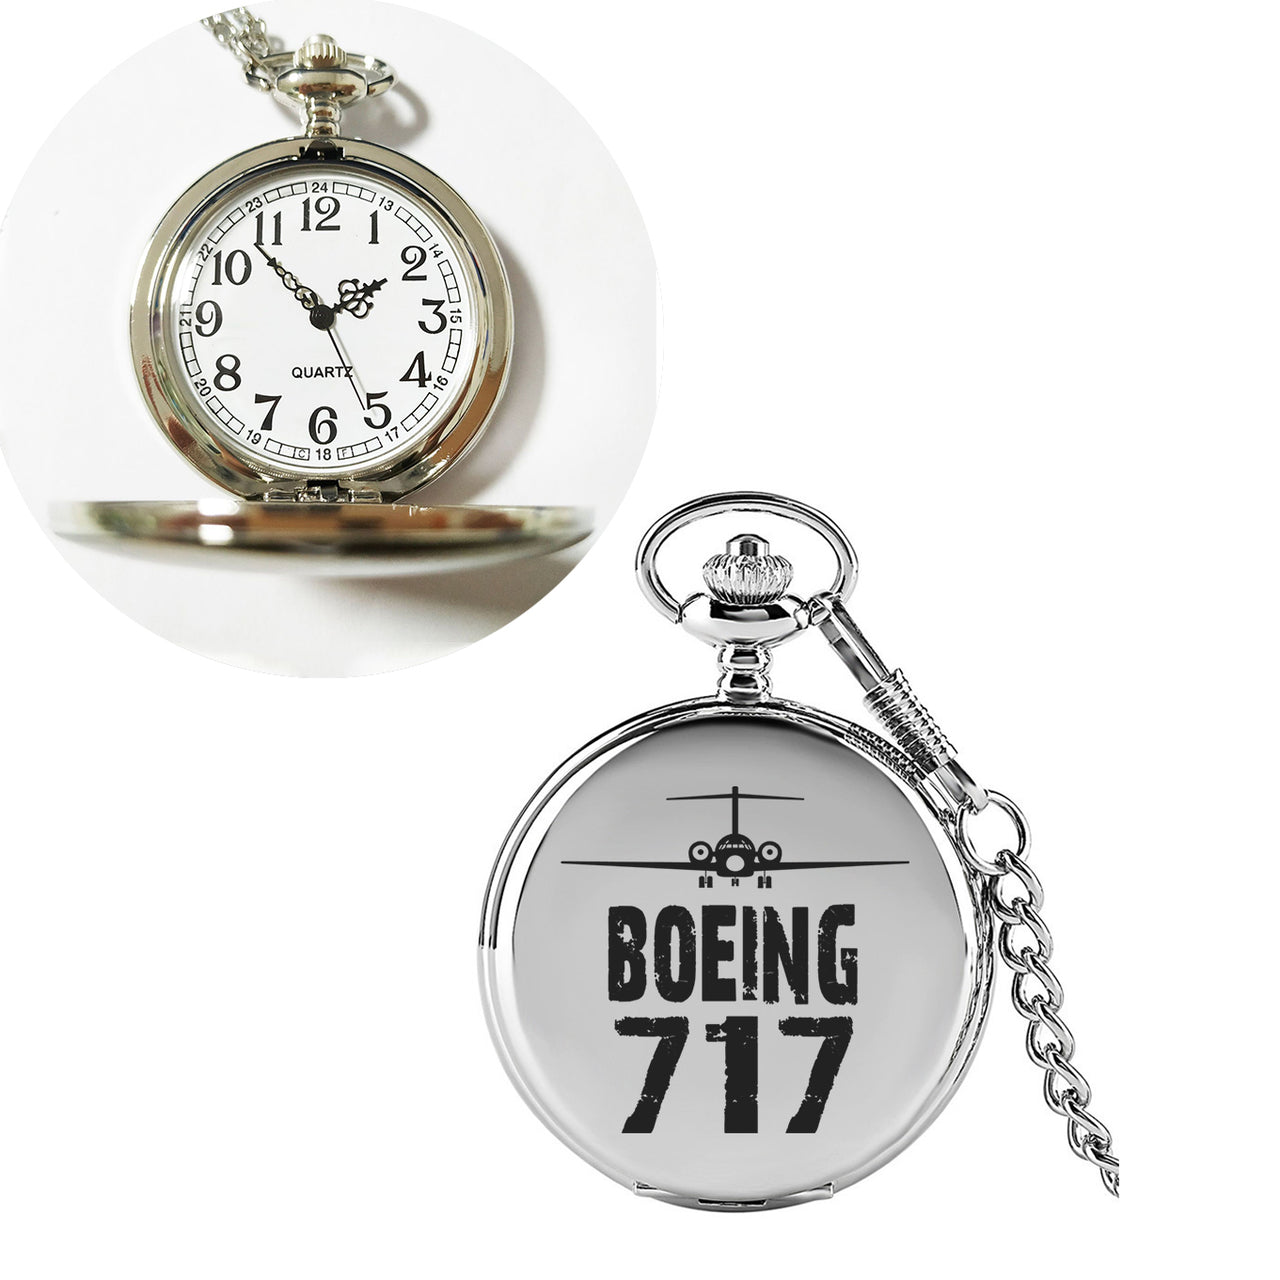 Boeing 717 & Plane Designed Pocket Watches